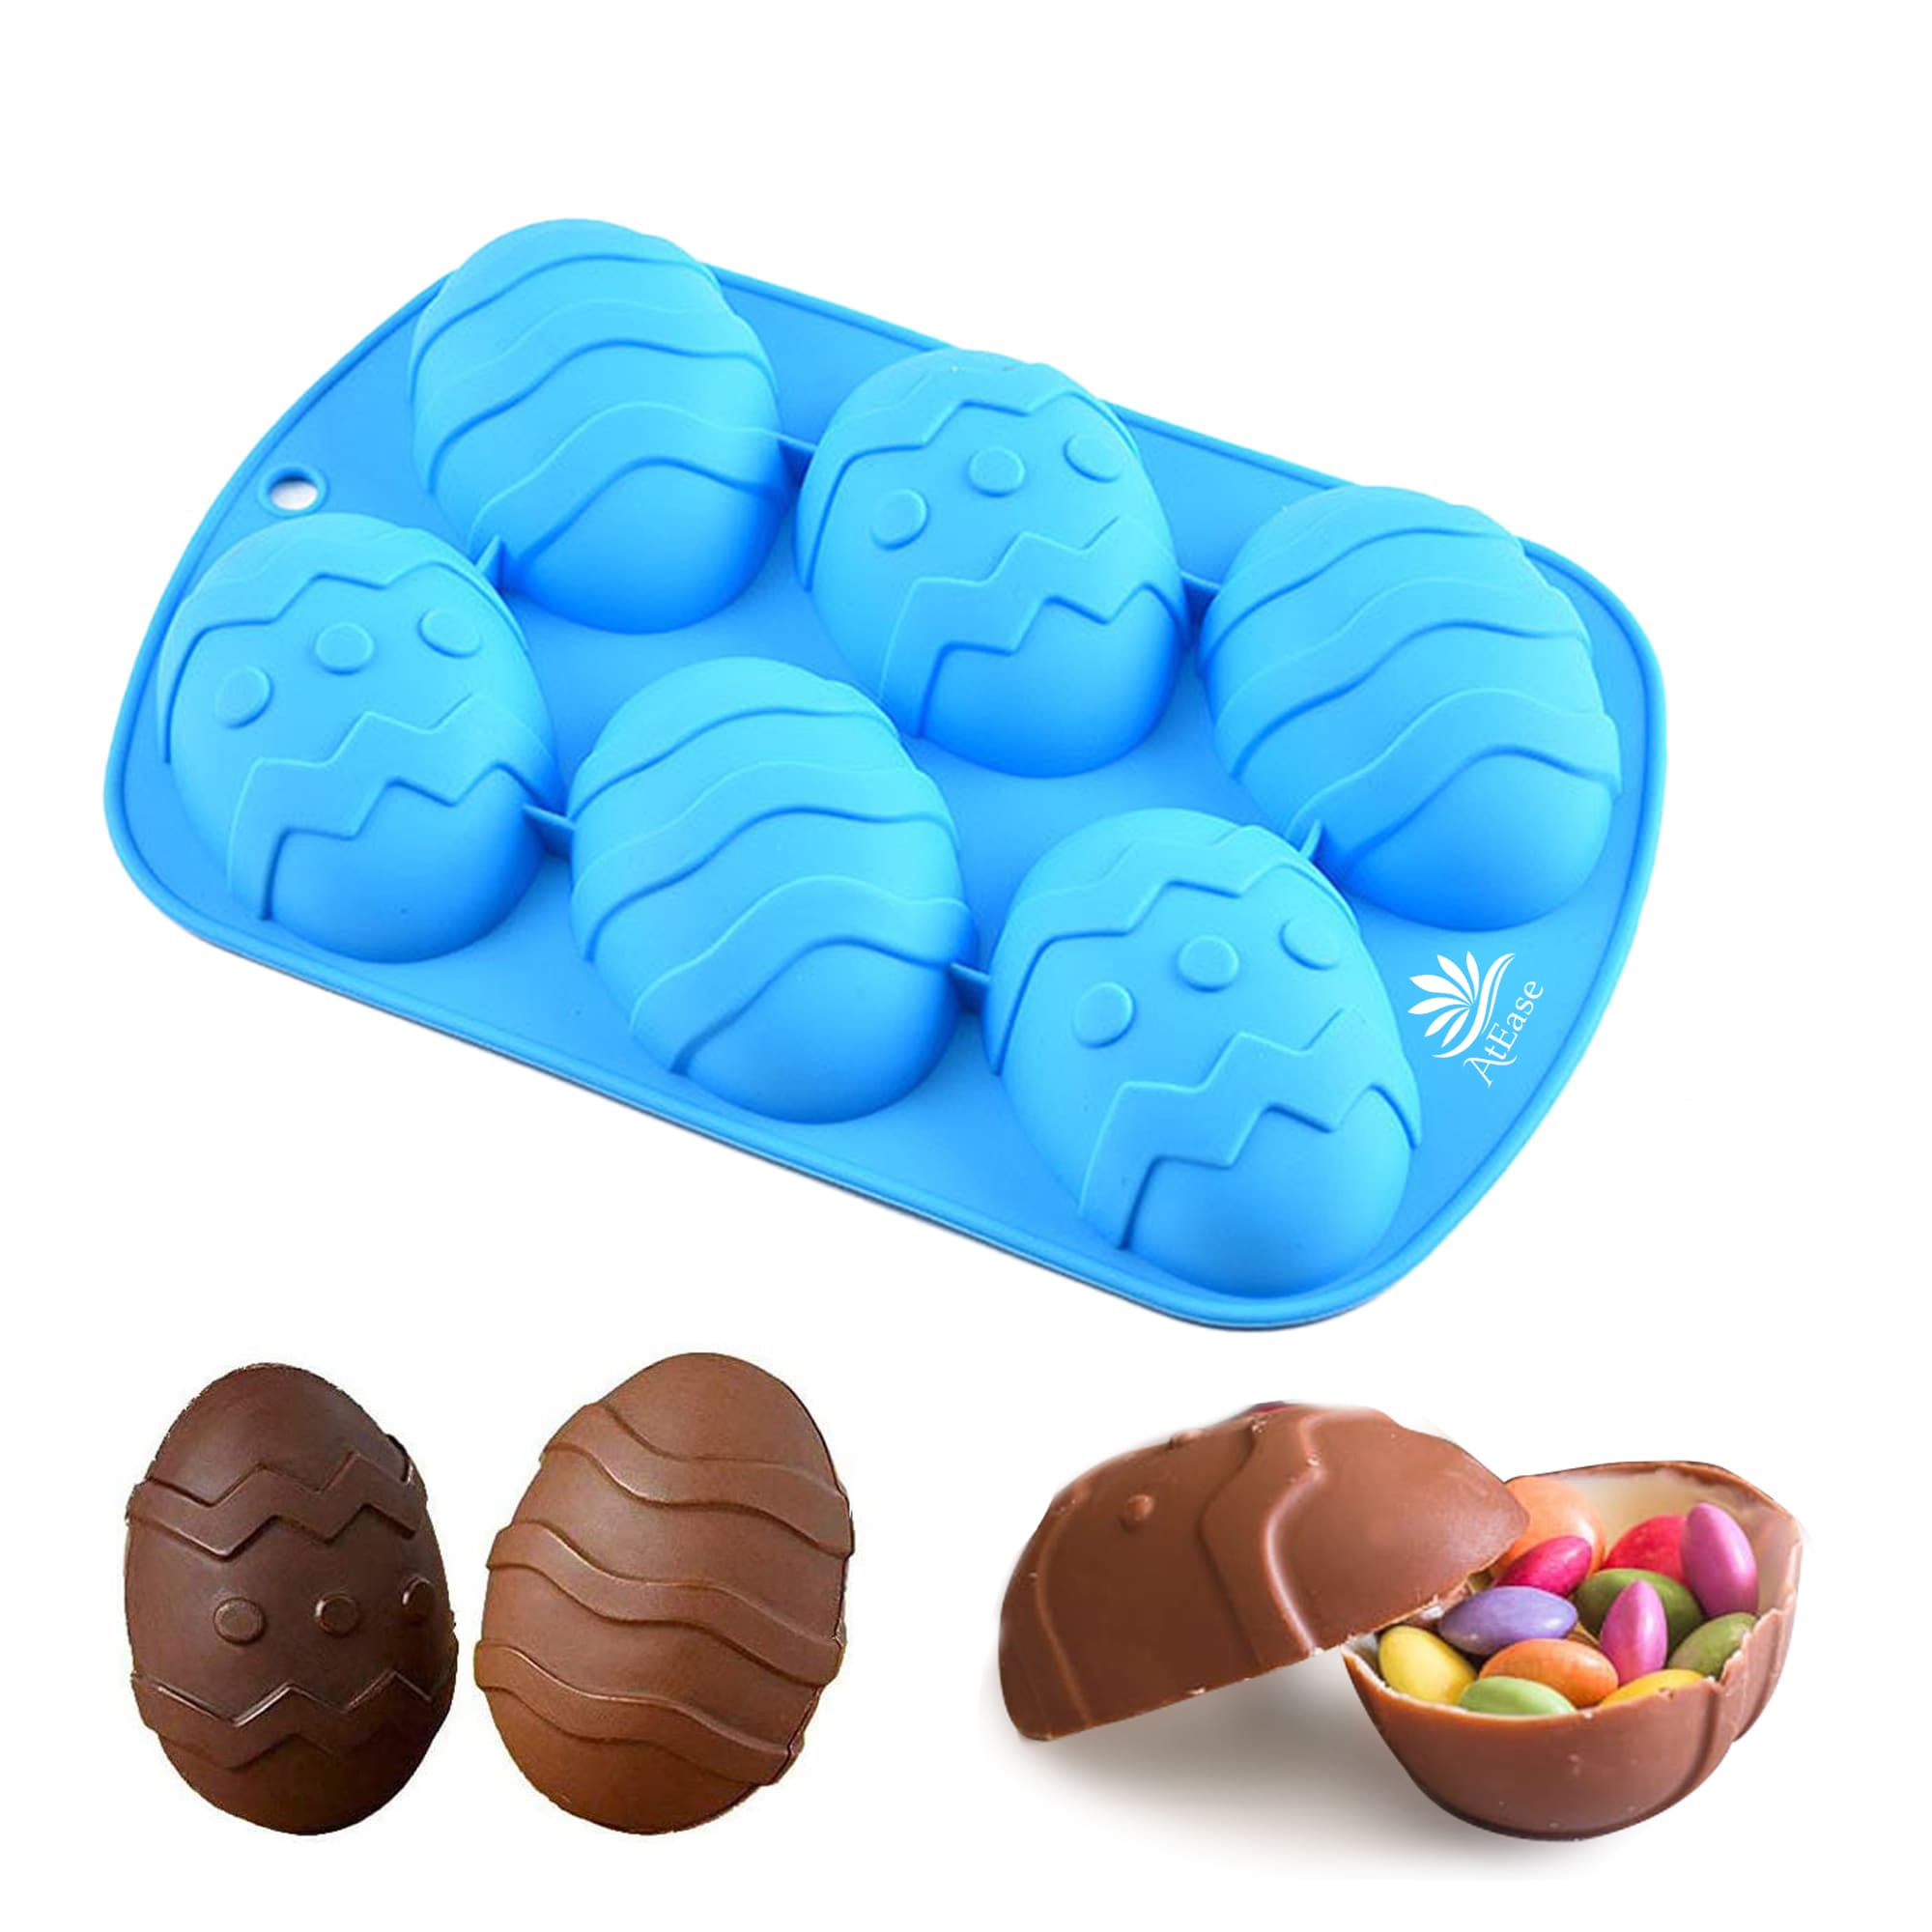 Easter Egg Mold - Cocoa Bomb Shop